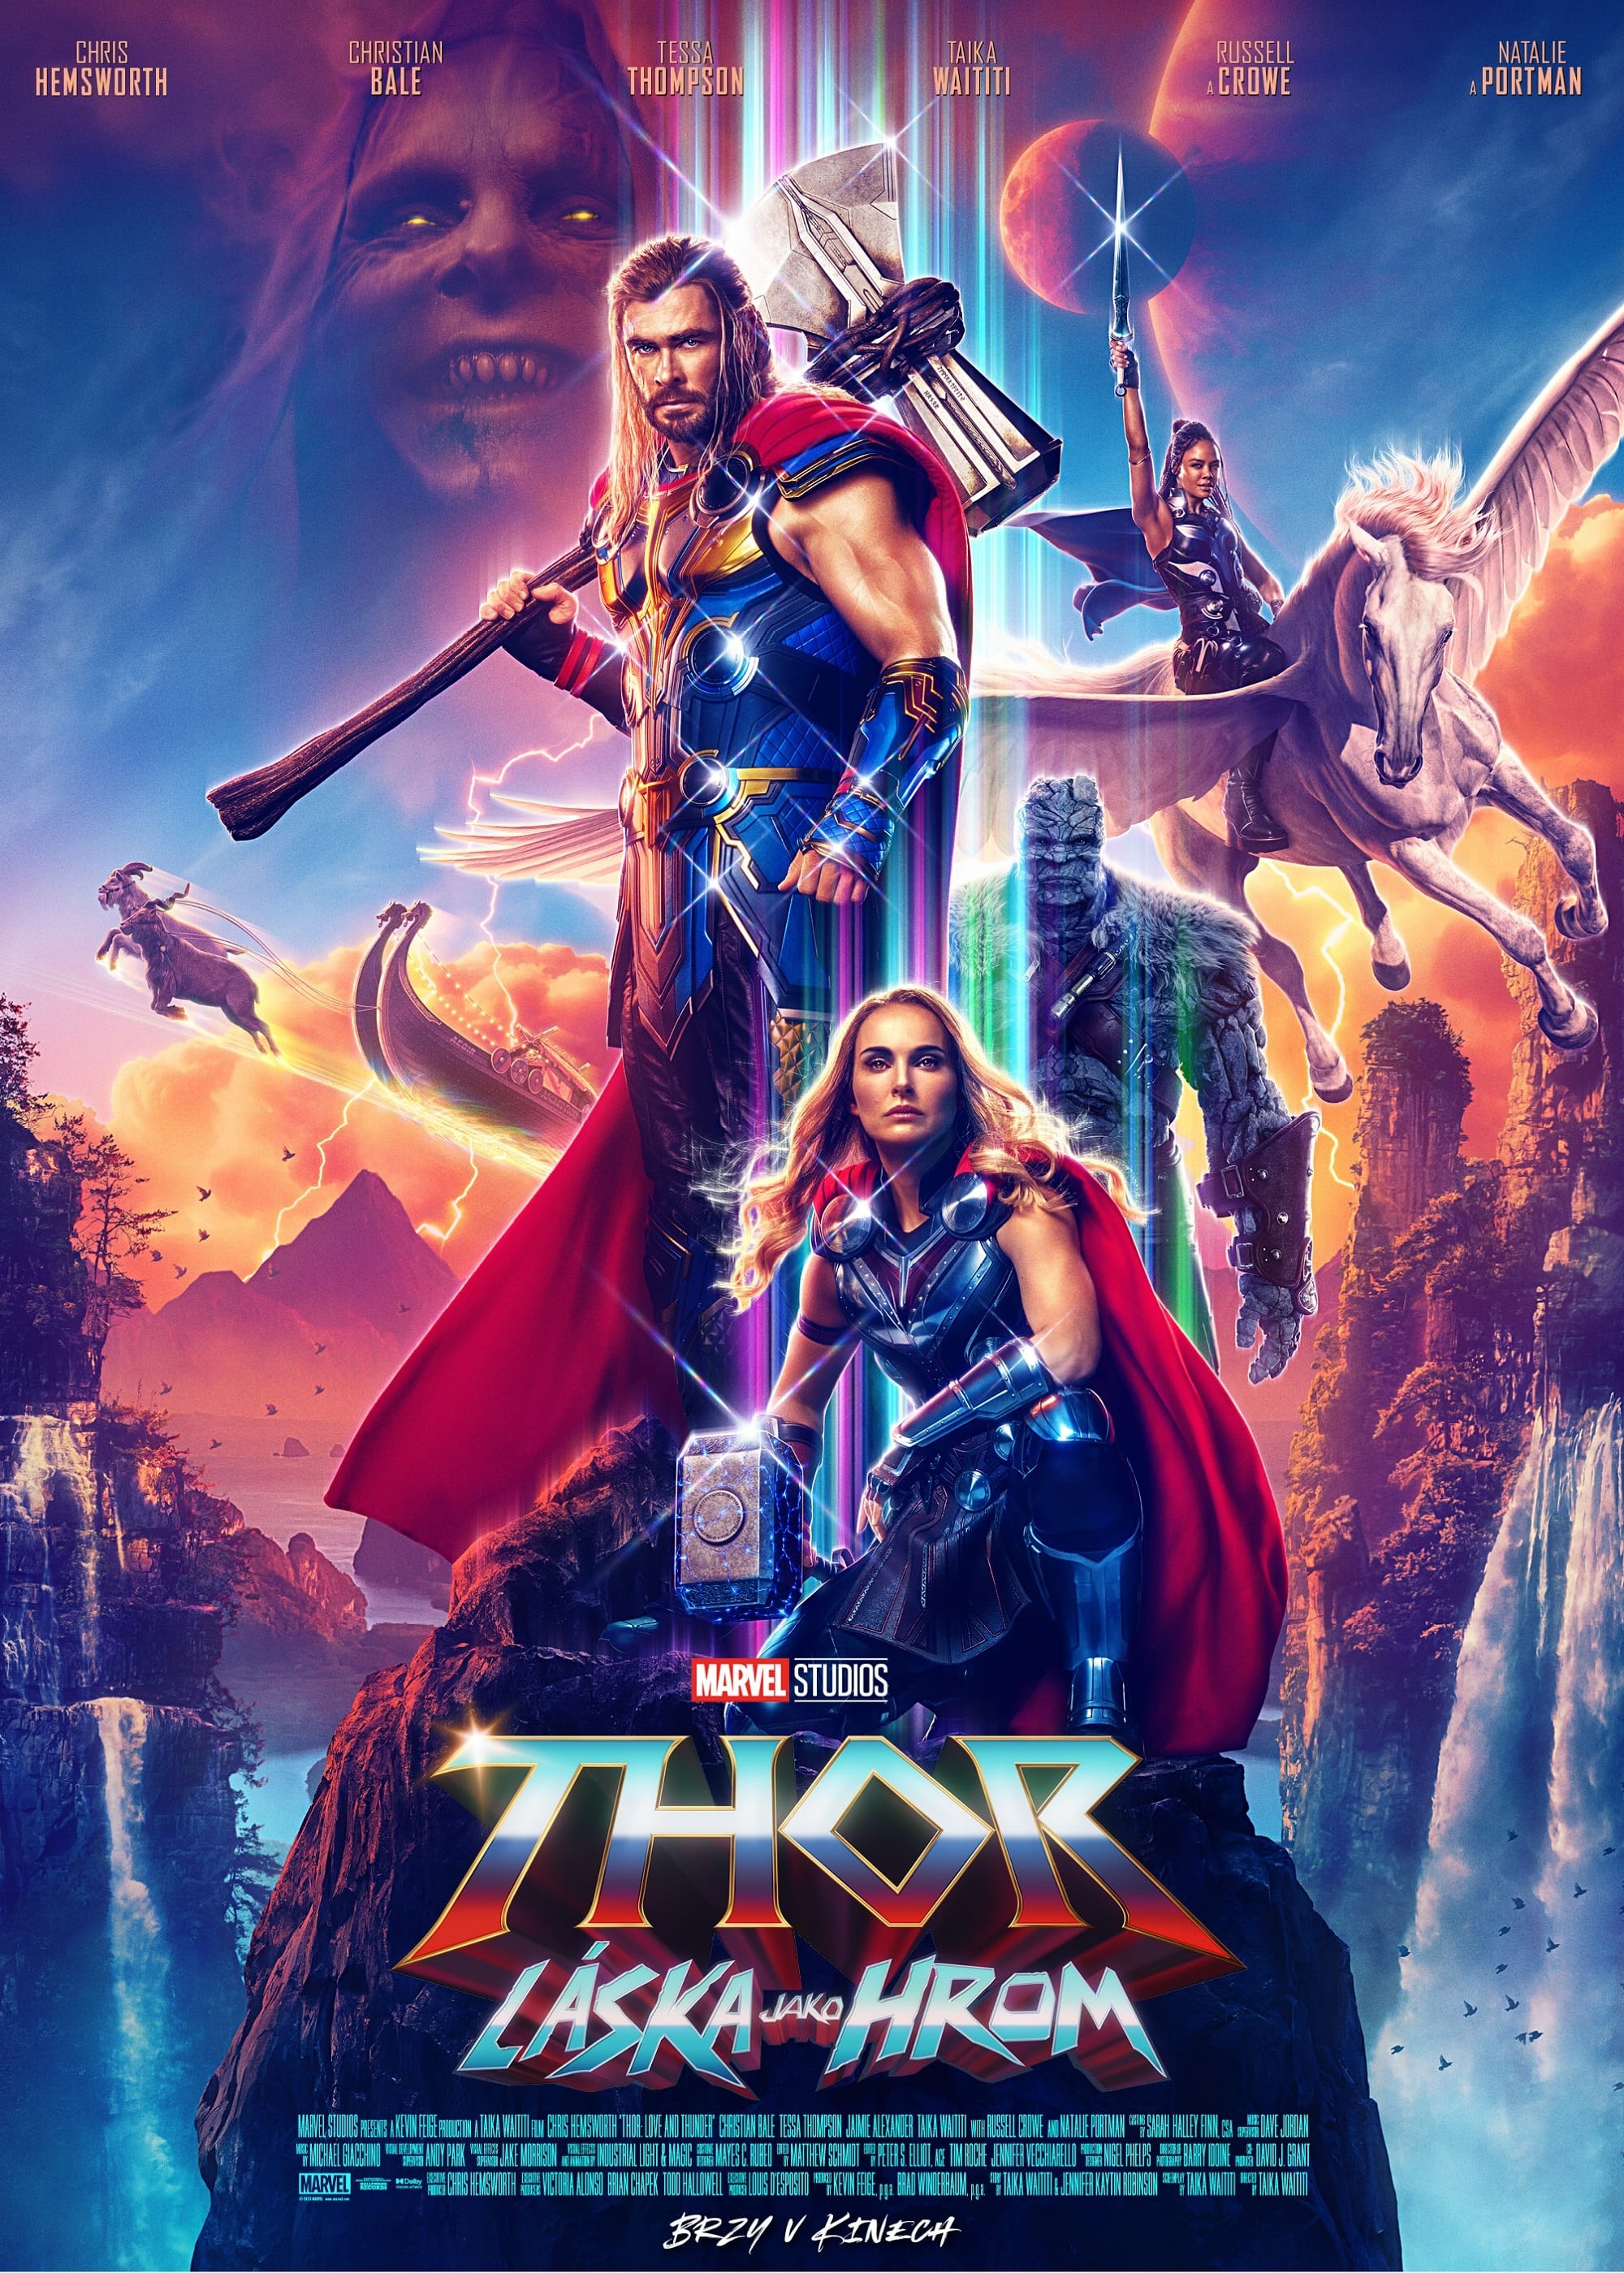 Stiahni si Filmy DVD Thor: Láska jako hrom / Thor: Love and Thunder  (2022)(CZ/EN)(DVD9) = CSFD 58%